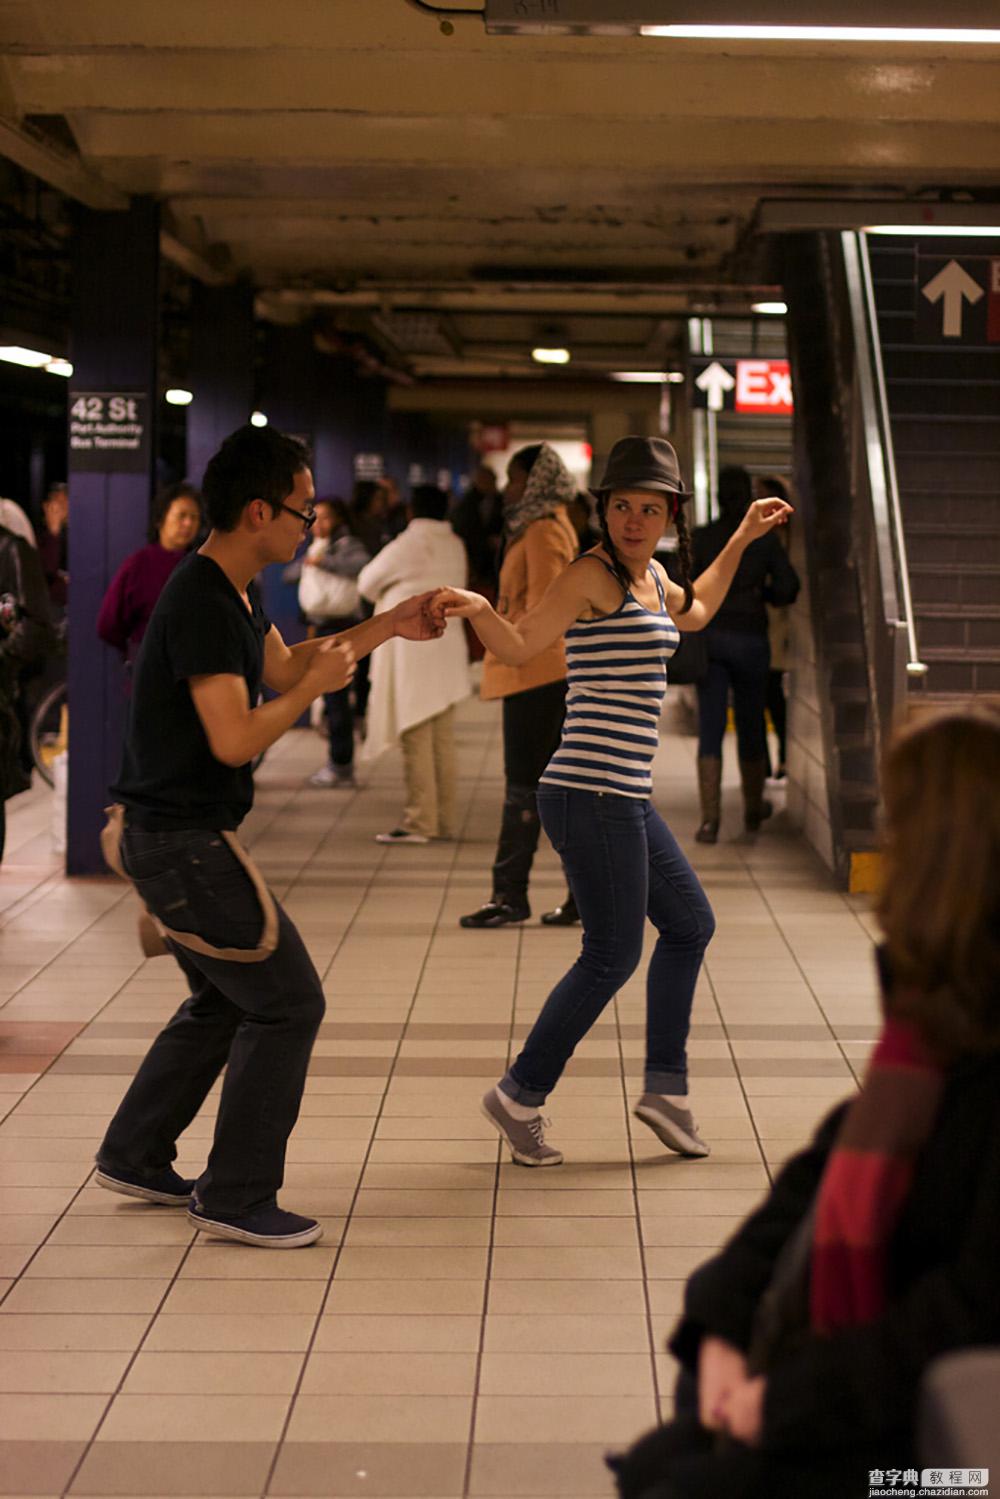 地铁拍摄技巧 教你如何在地铁里拍摄出好照片教程7